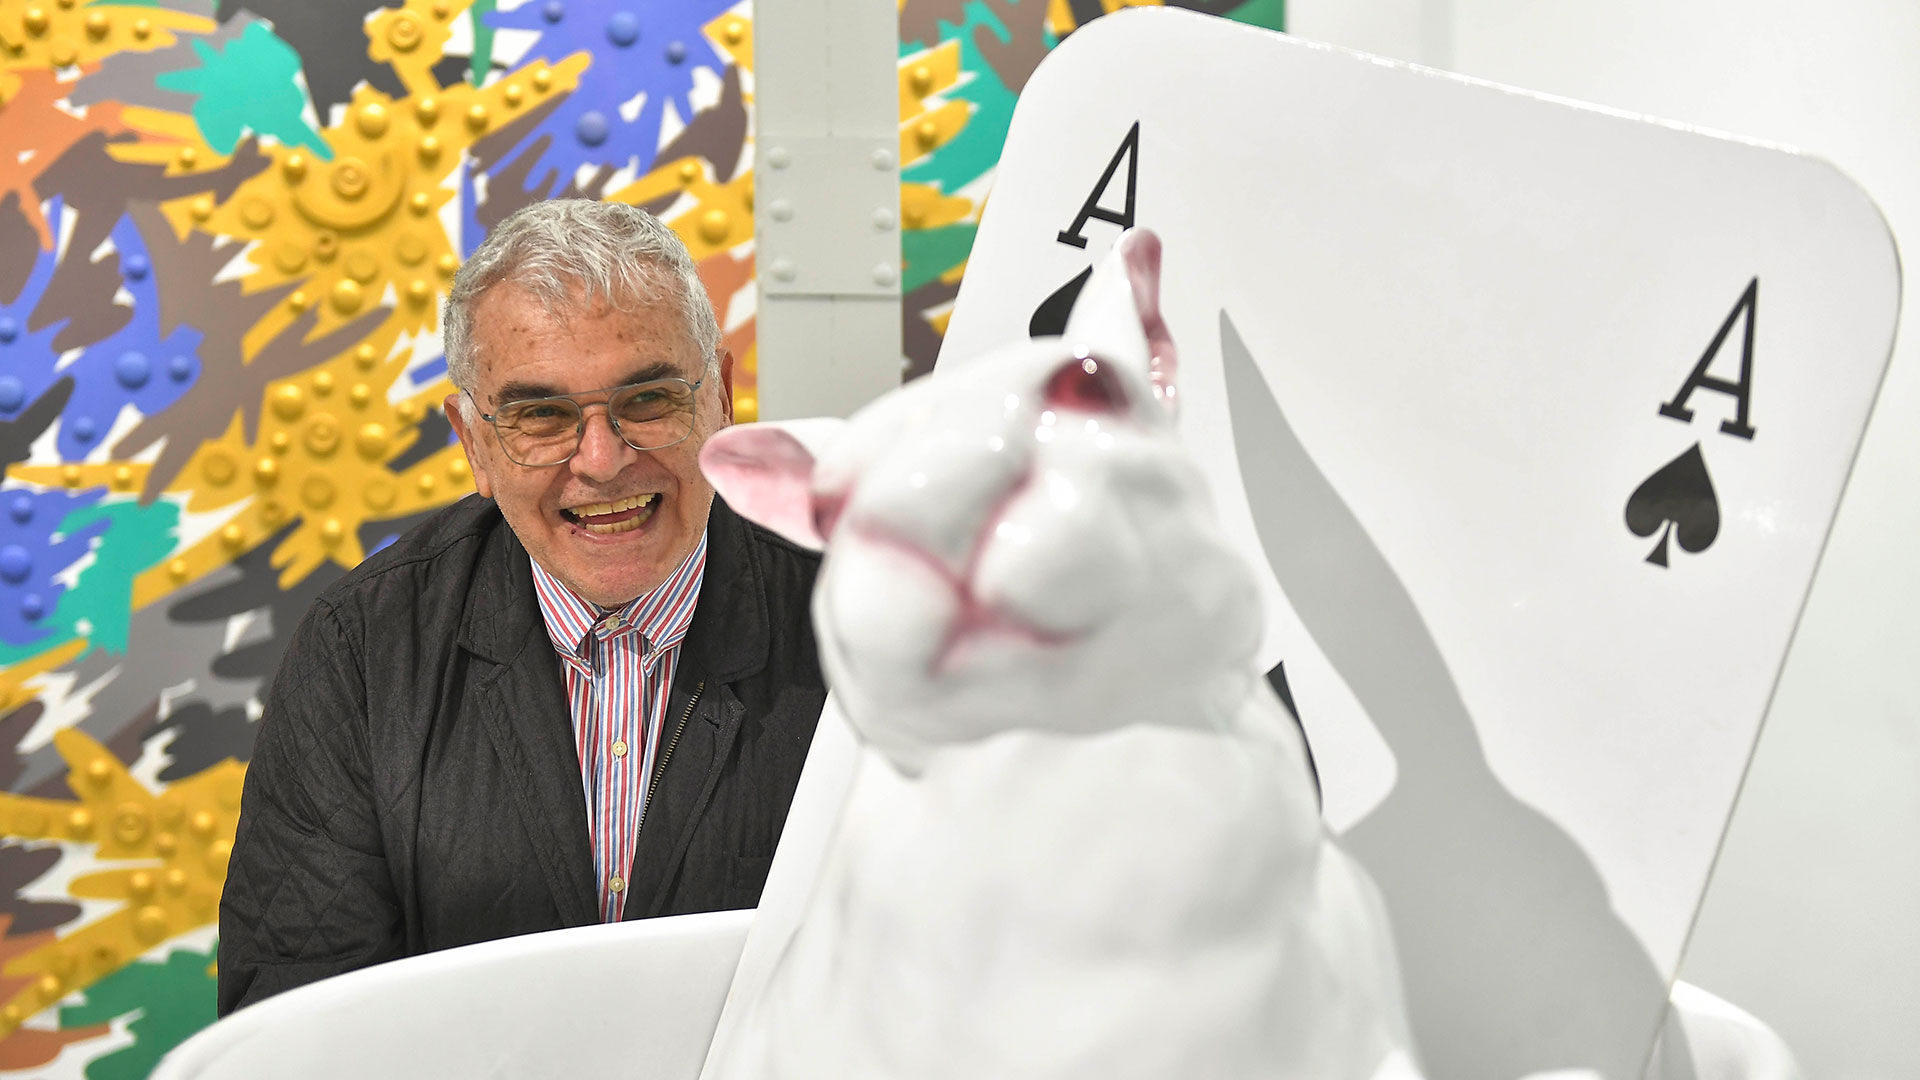 Edgardo Giménez junto al conejo que creó para su obra homenaje a "Alicia en el país de las maravillas" (Télam)